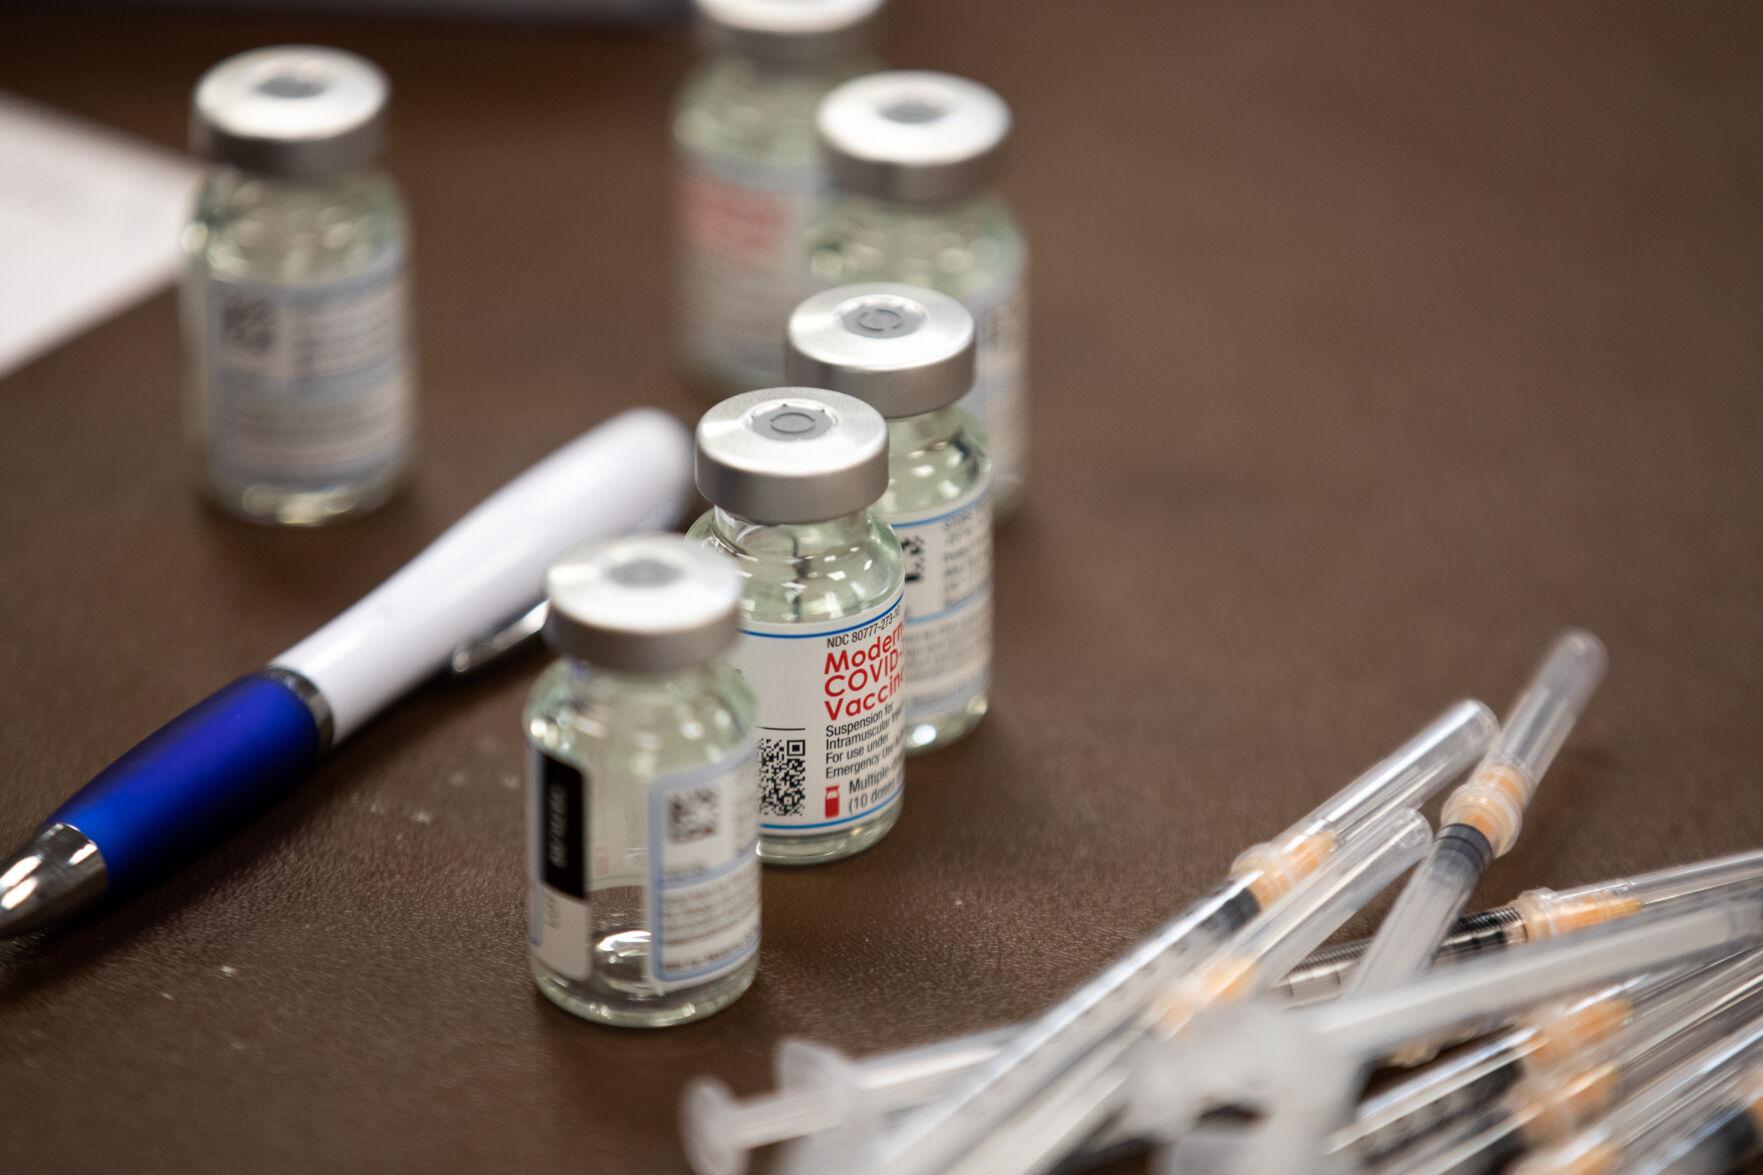 4,000 doses of COVID-19 vaccine allocated to Crossroads providers